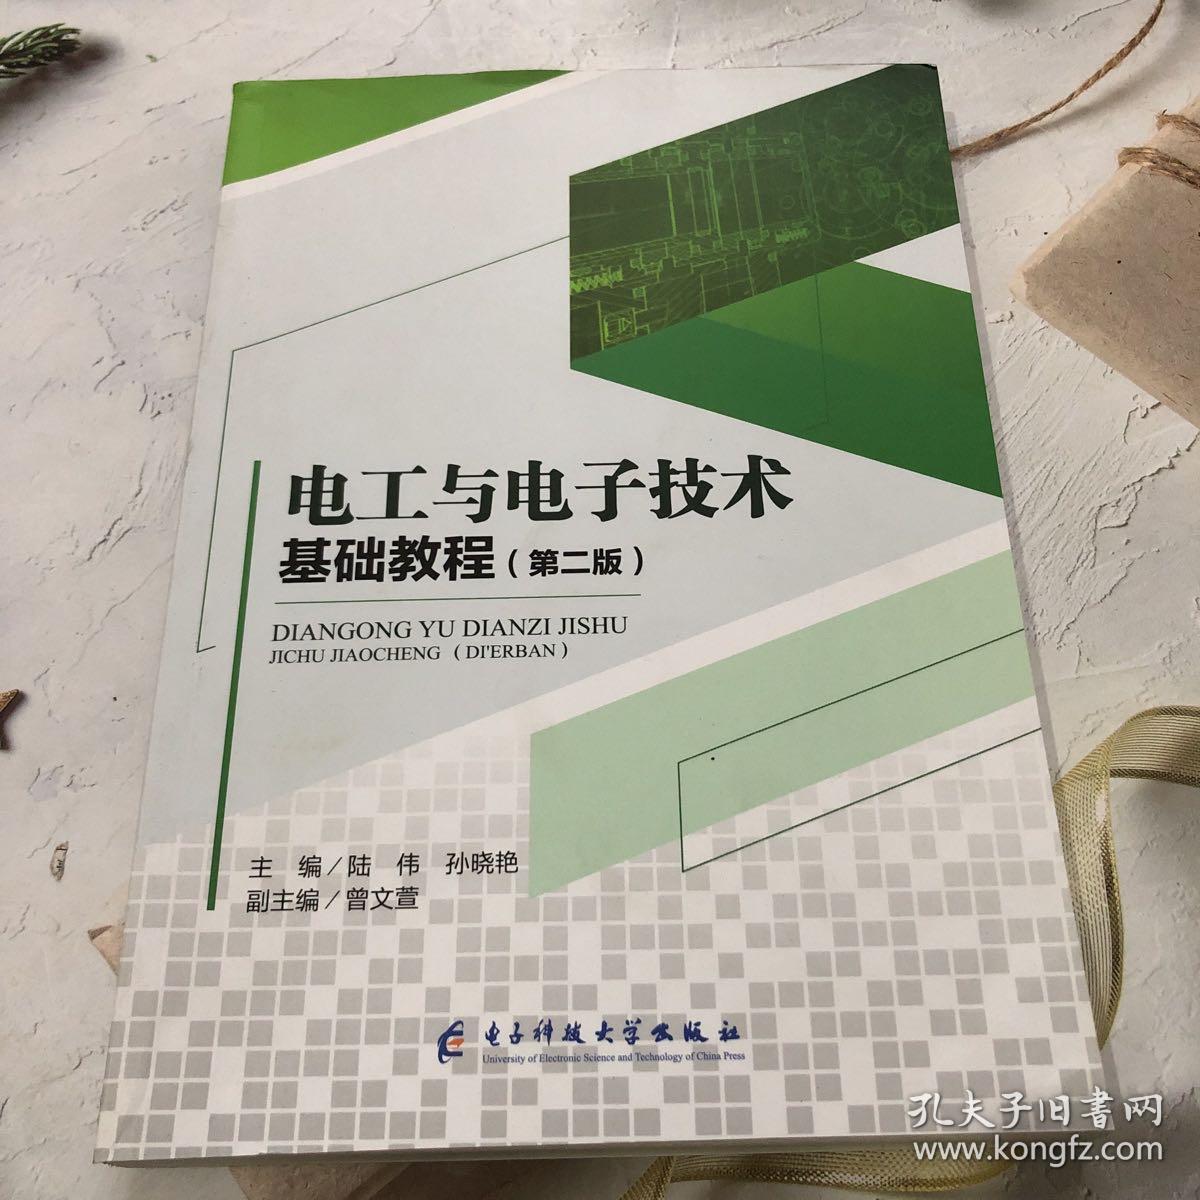 【正版】电工与电子技术基础教程 陆伟,孙晓艳